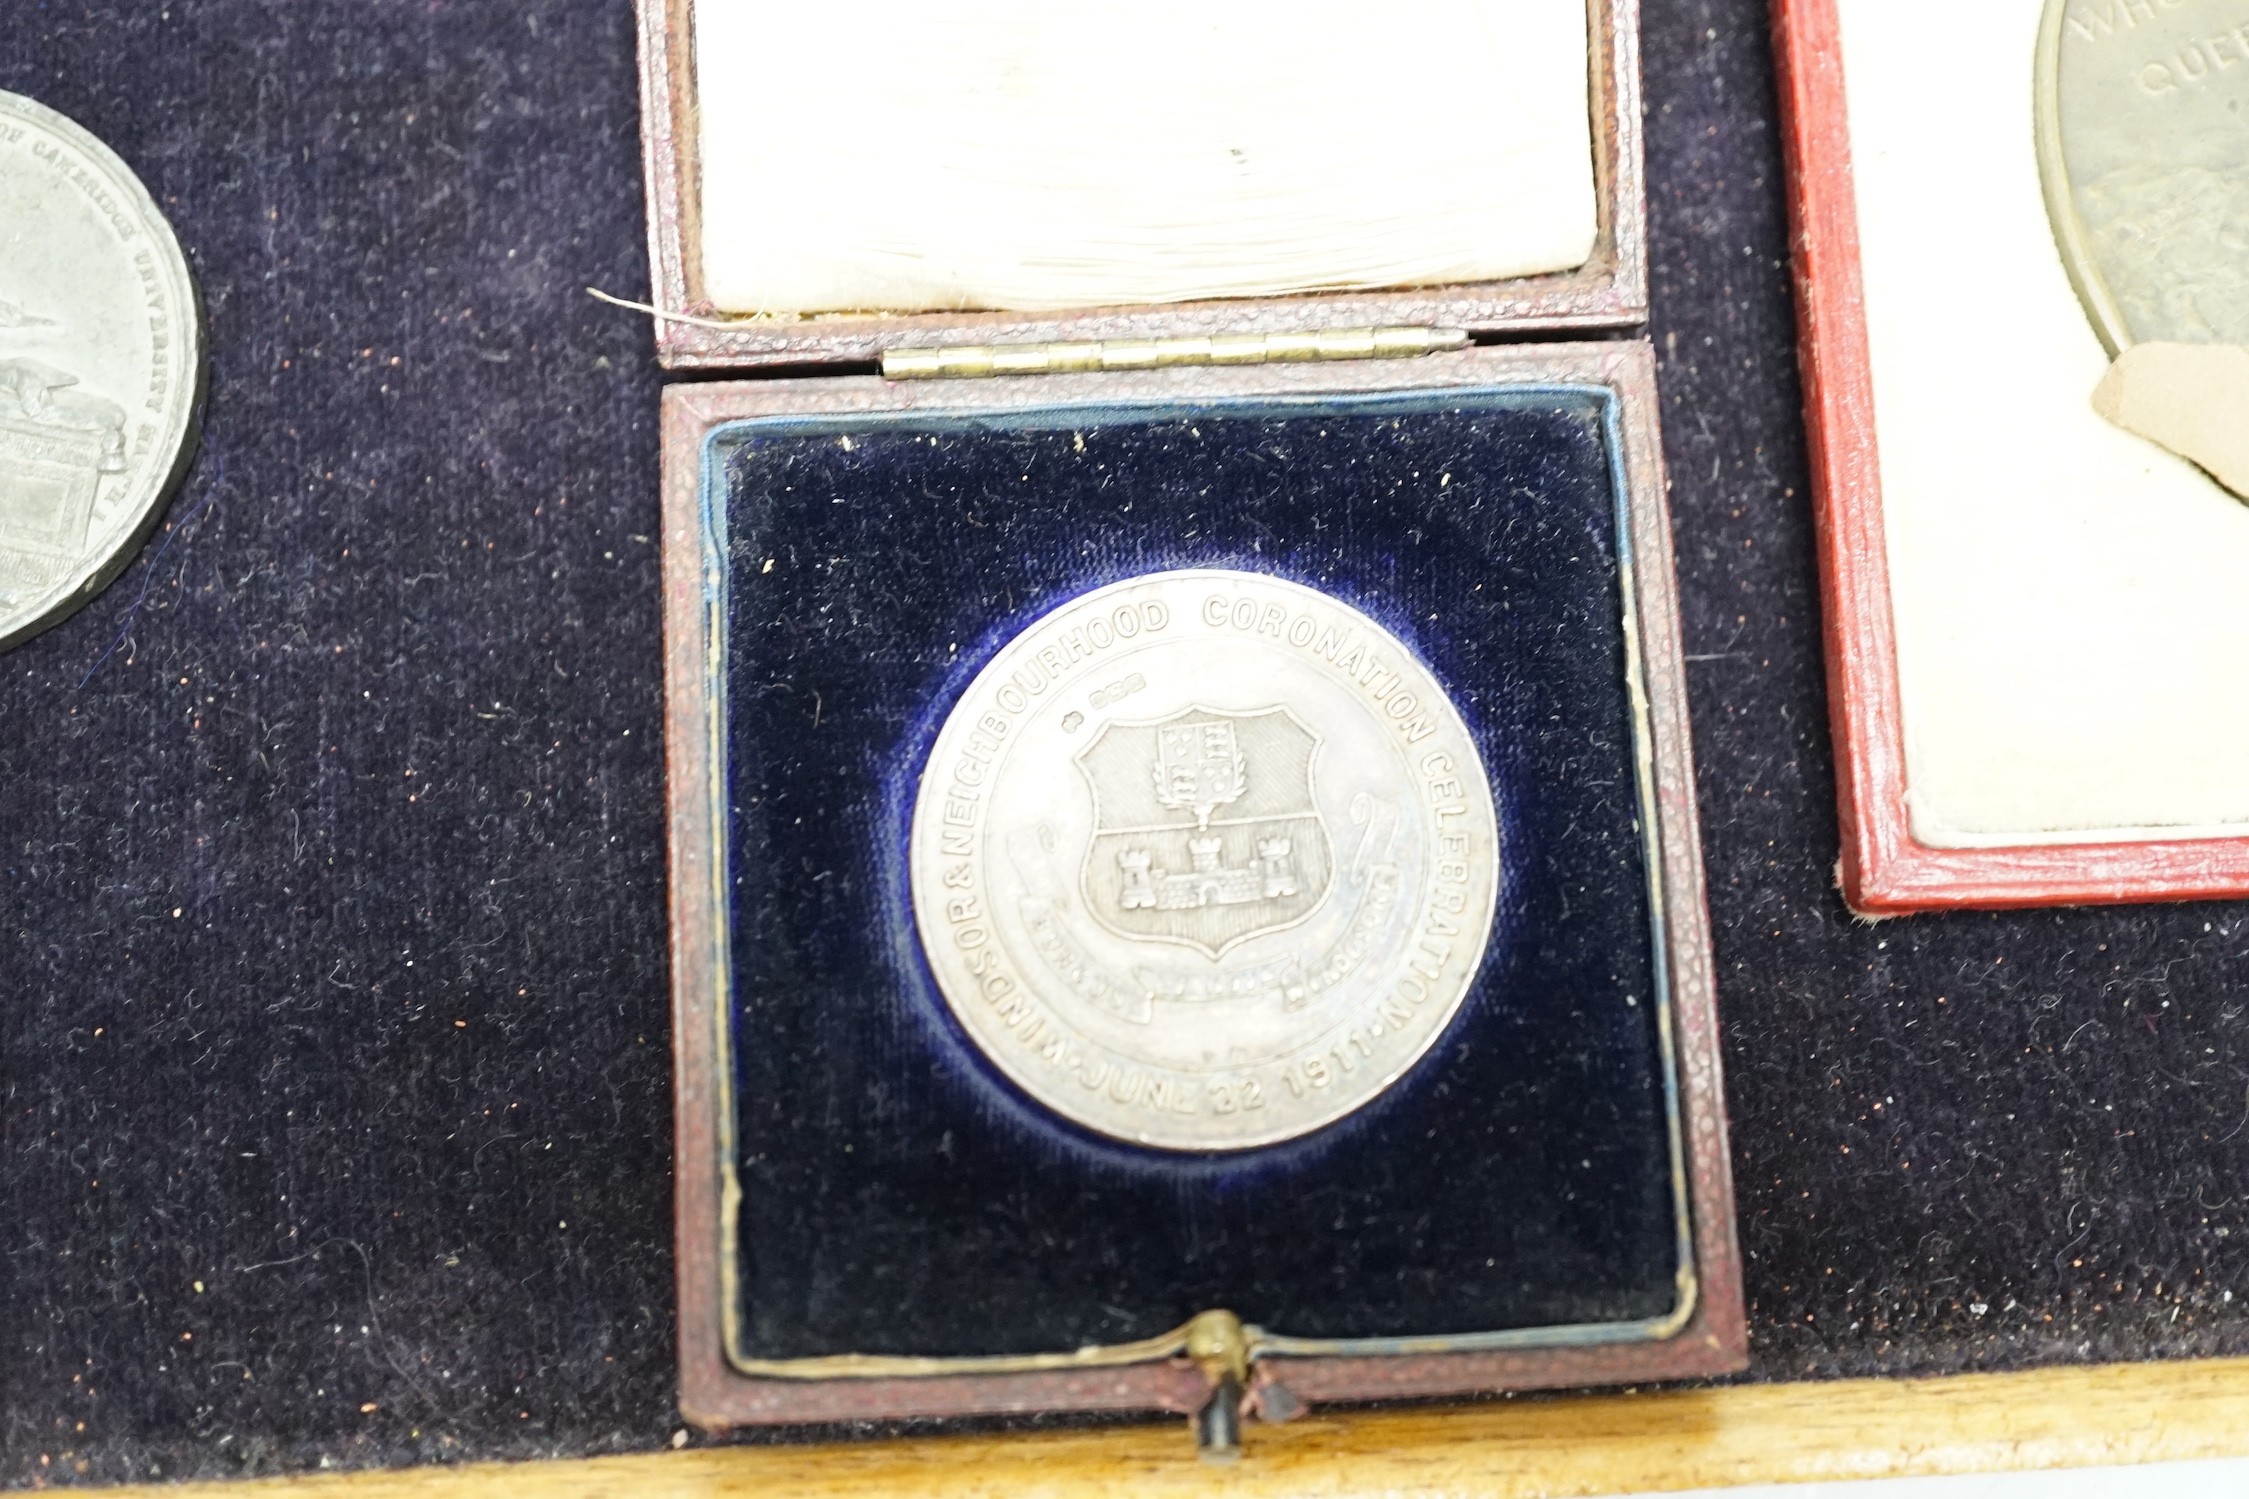 Victorian commemorative medals –